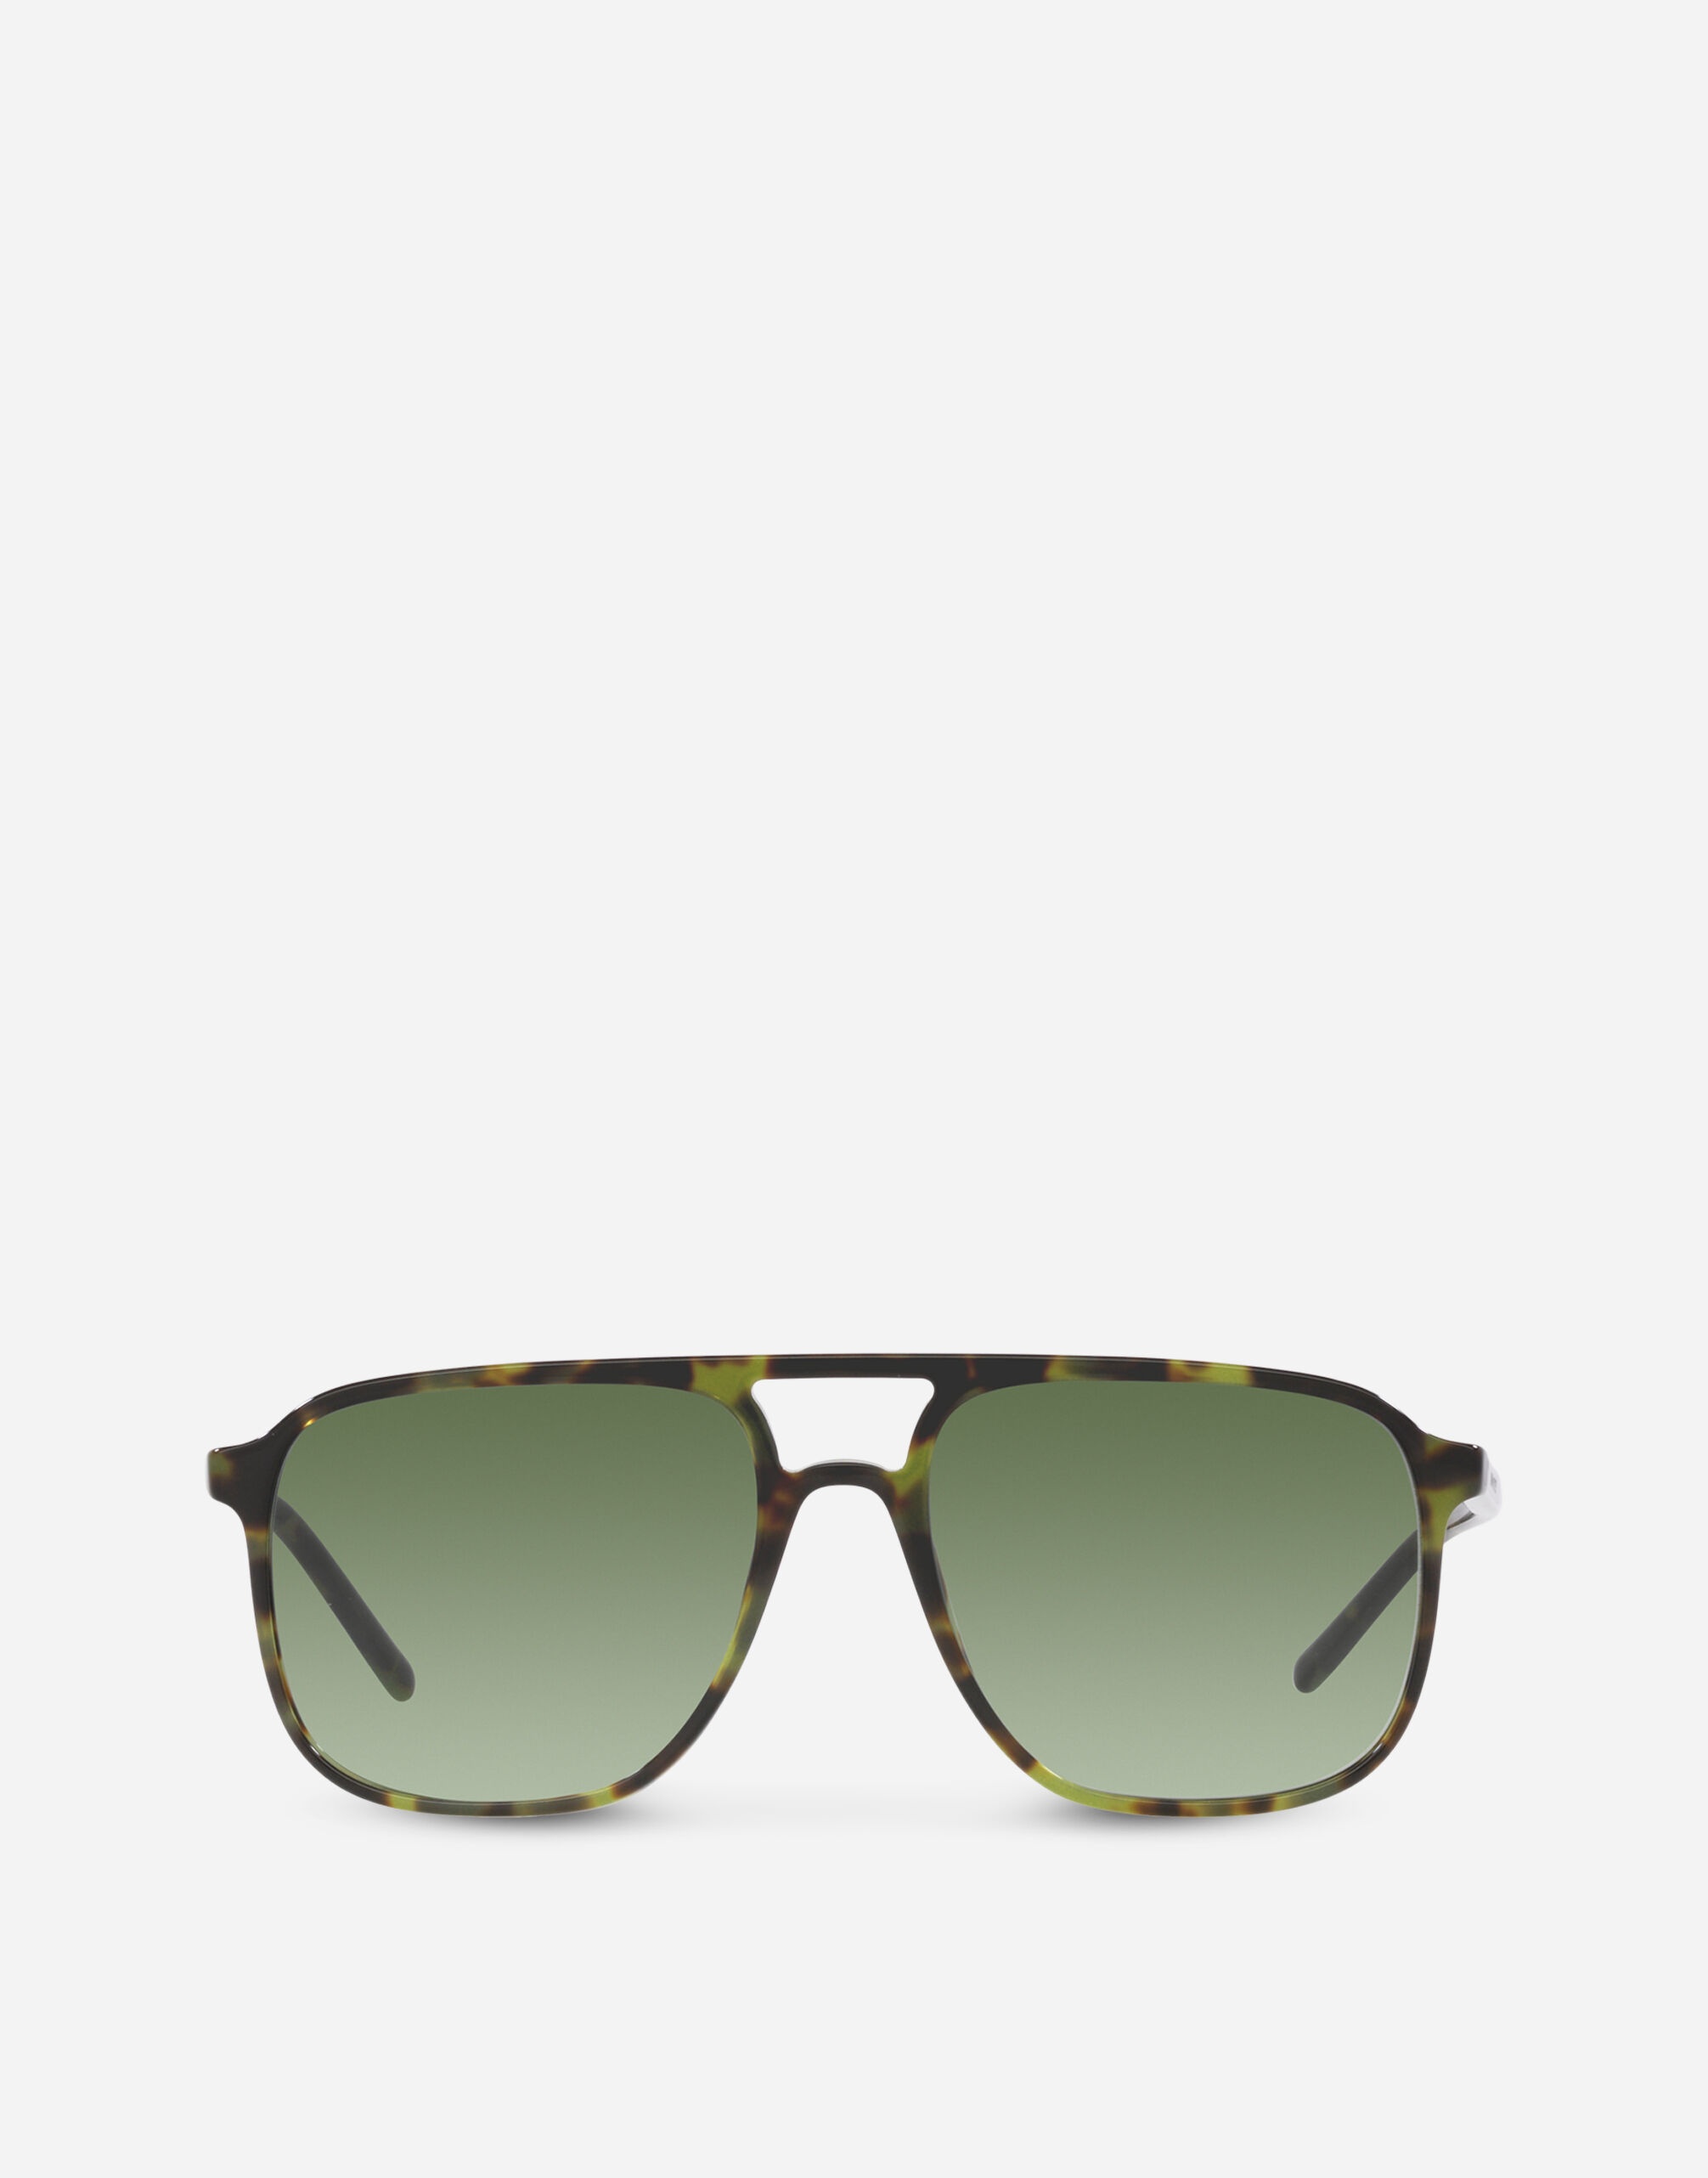 Thin profile sunglasses - 1